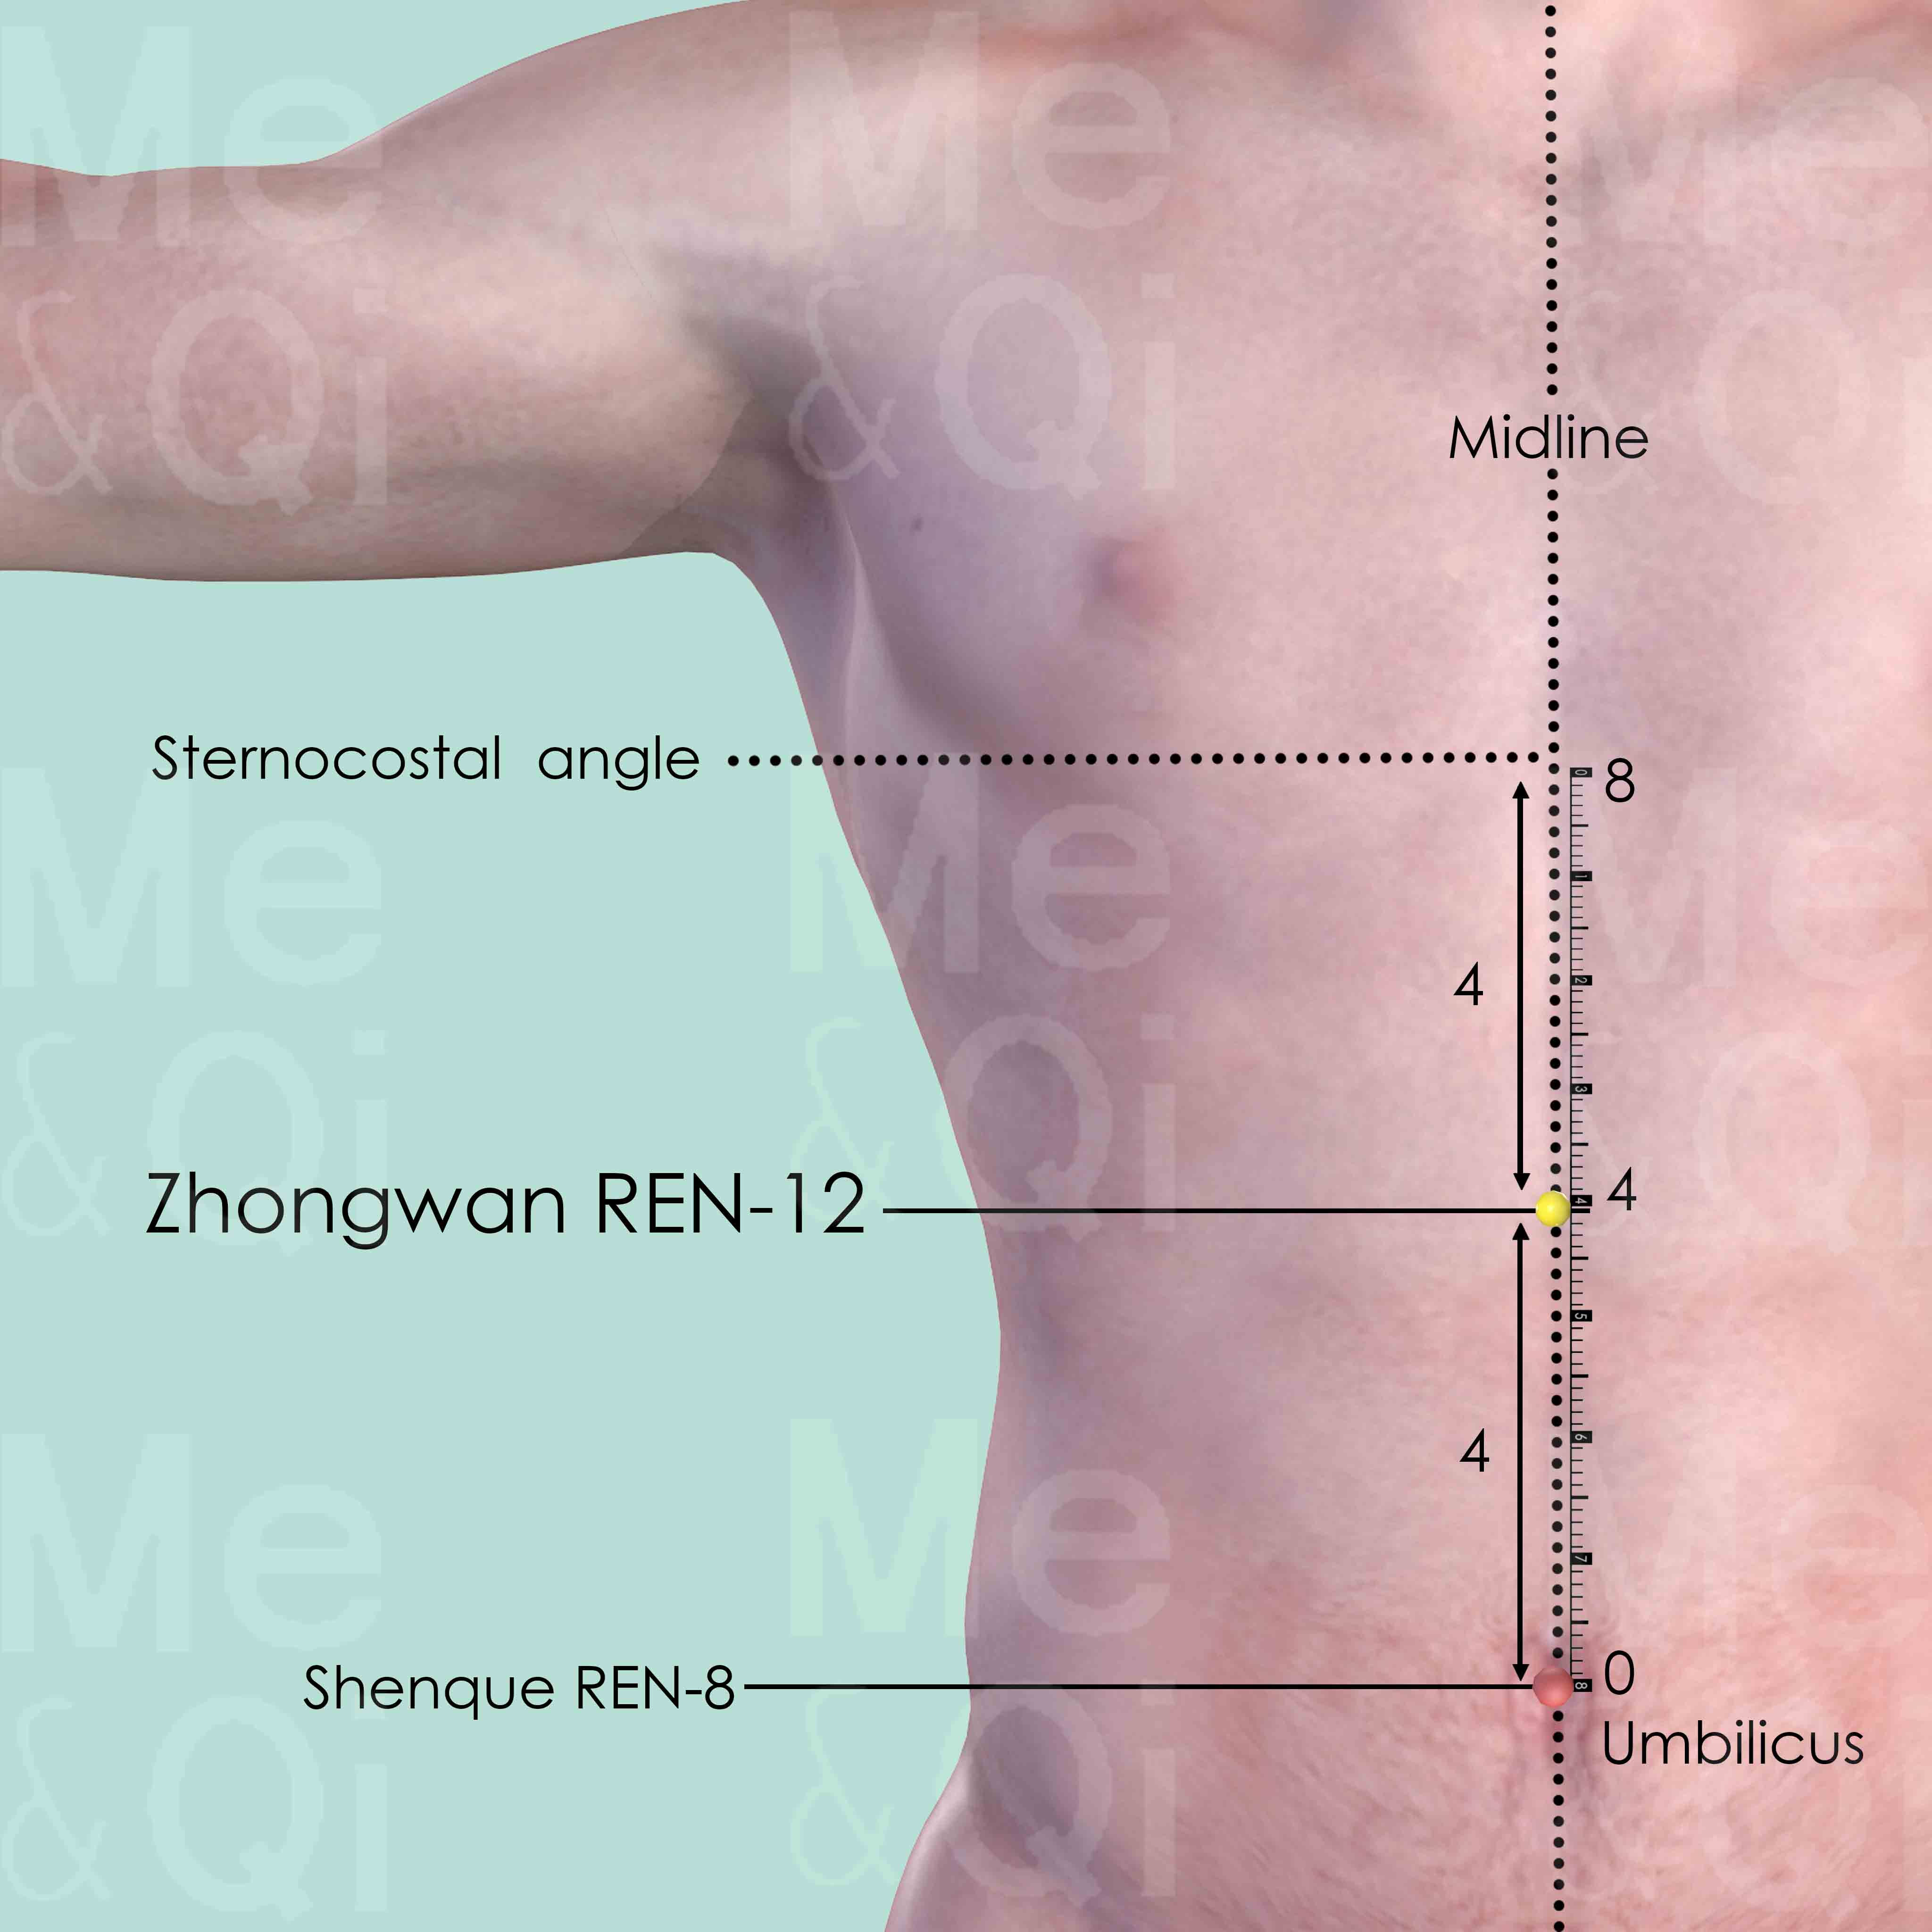 Zhongwan REN-12